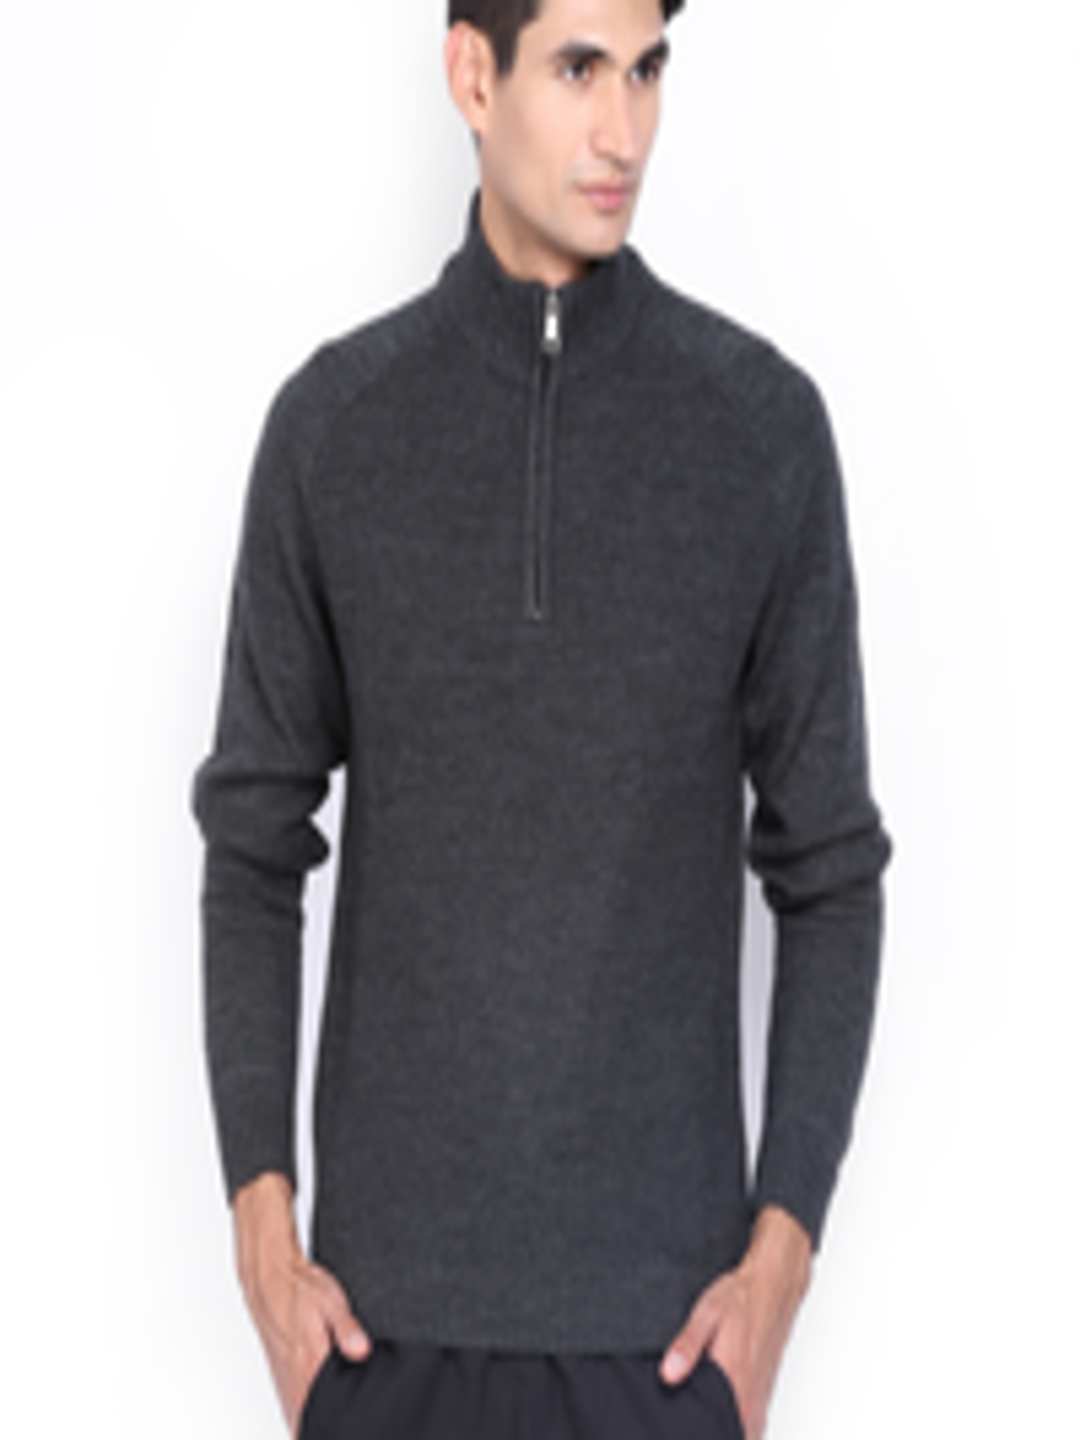 Buy Puma Men Grey Wool Blend Sweater - Sweaters for Men 424535 | Myntra